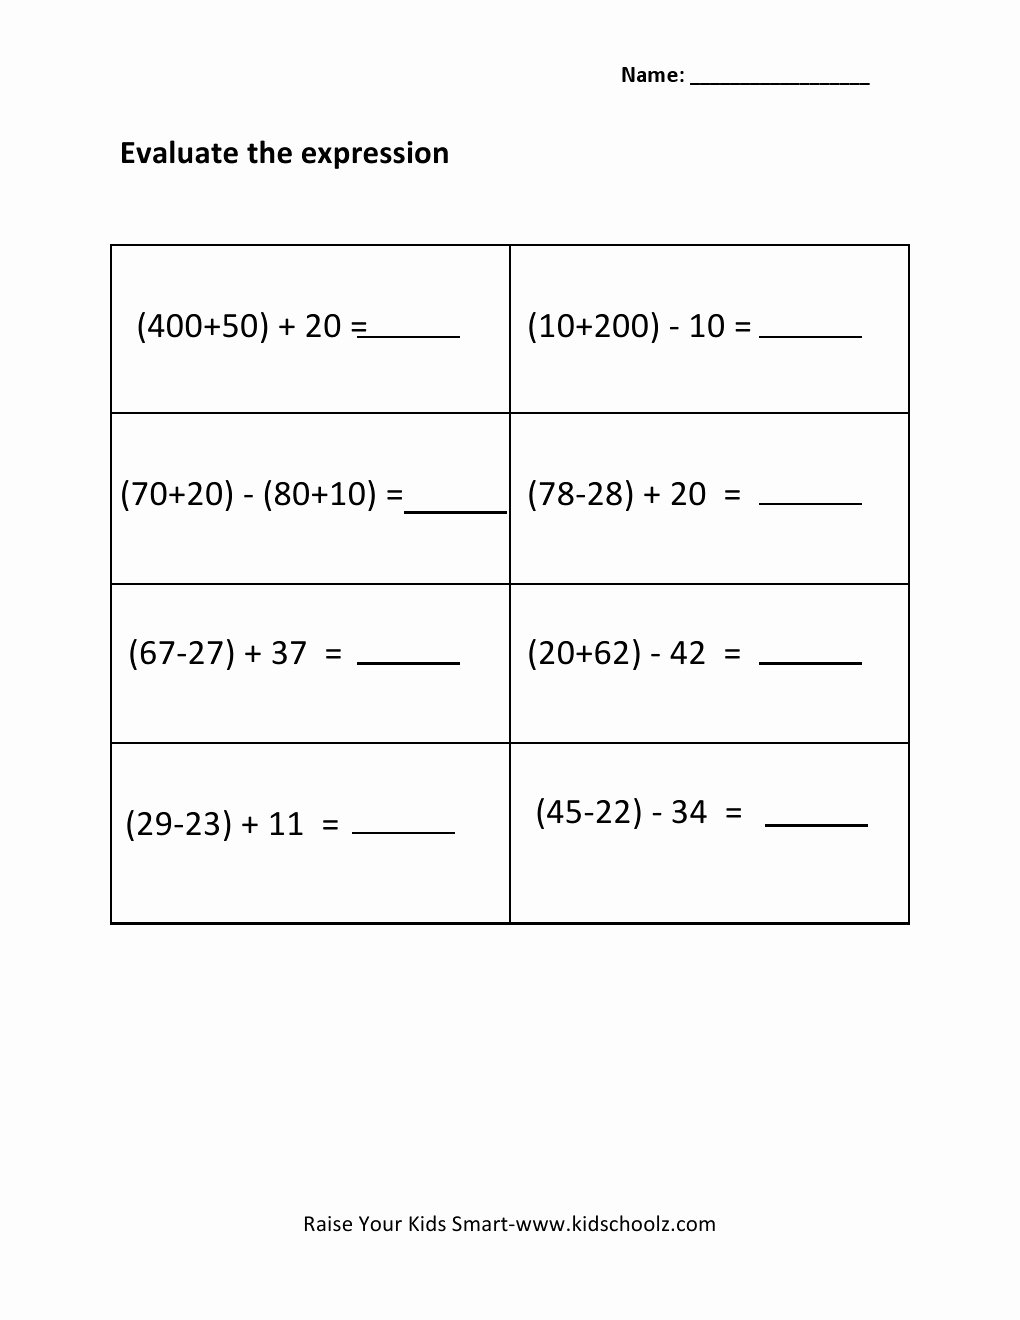 Evaluate the Expression Worksheet Luxury 7th Grade Worksheets Part 2 Worksheet Mogenk Paper Works